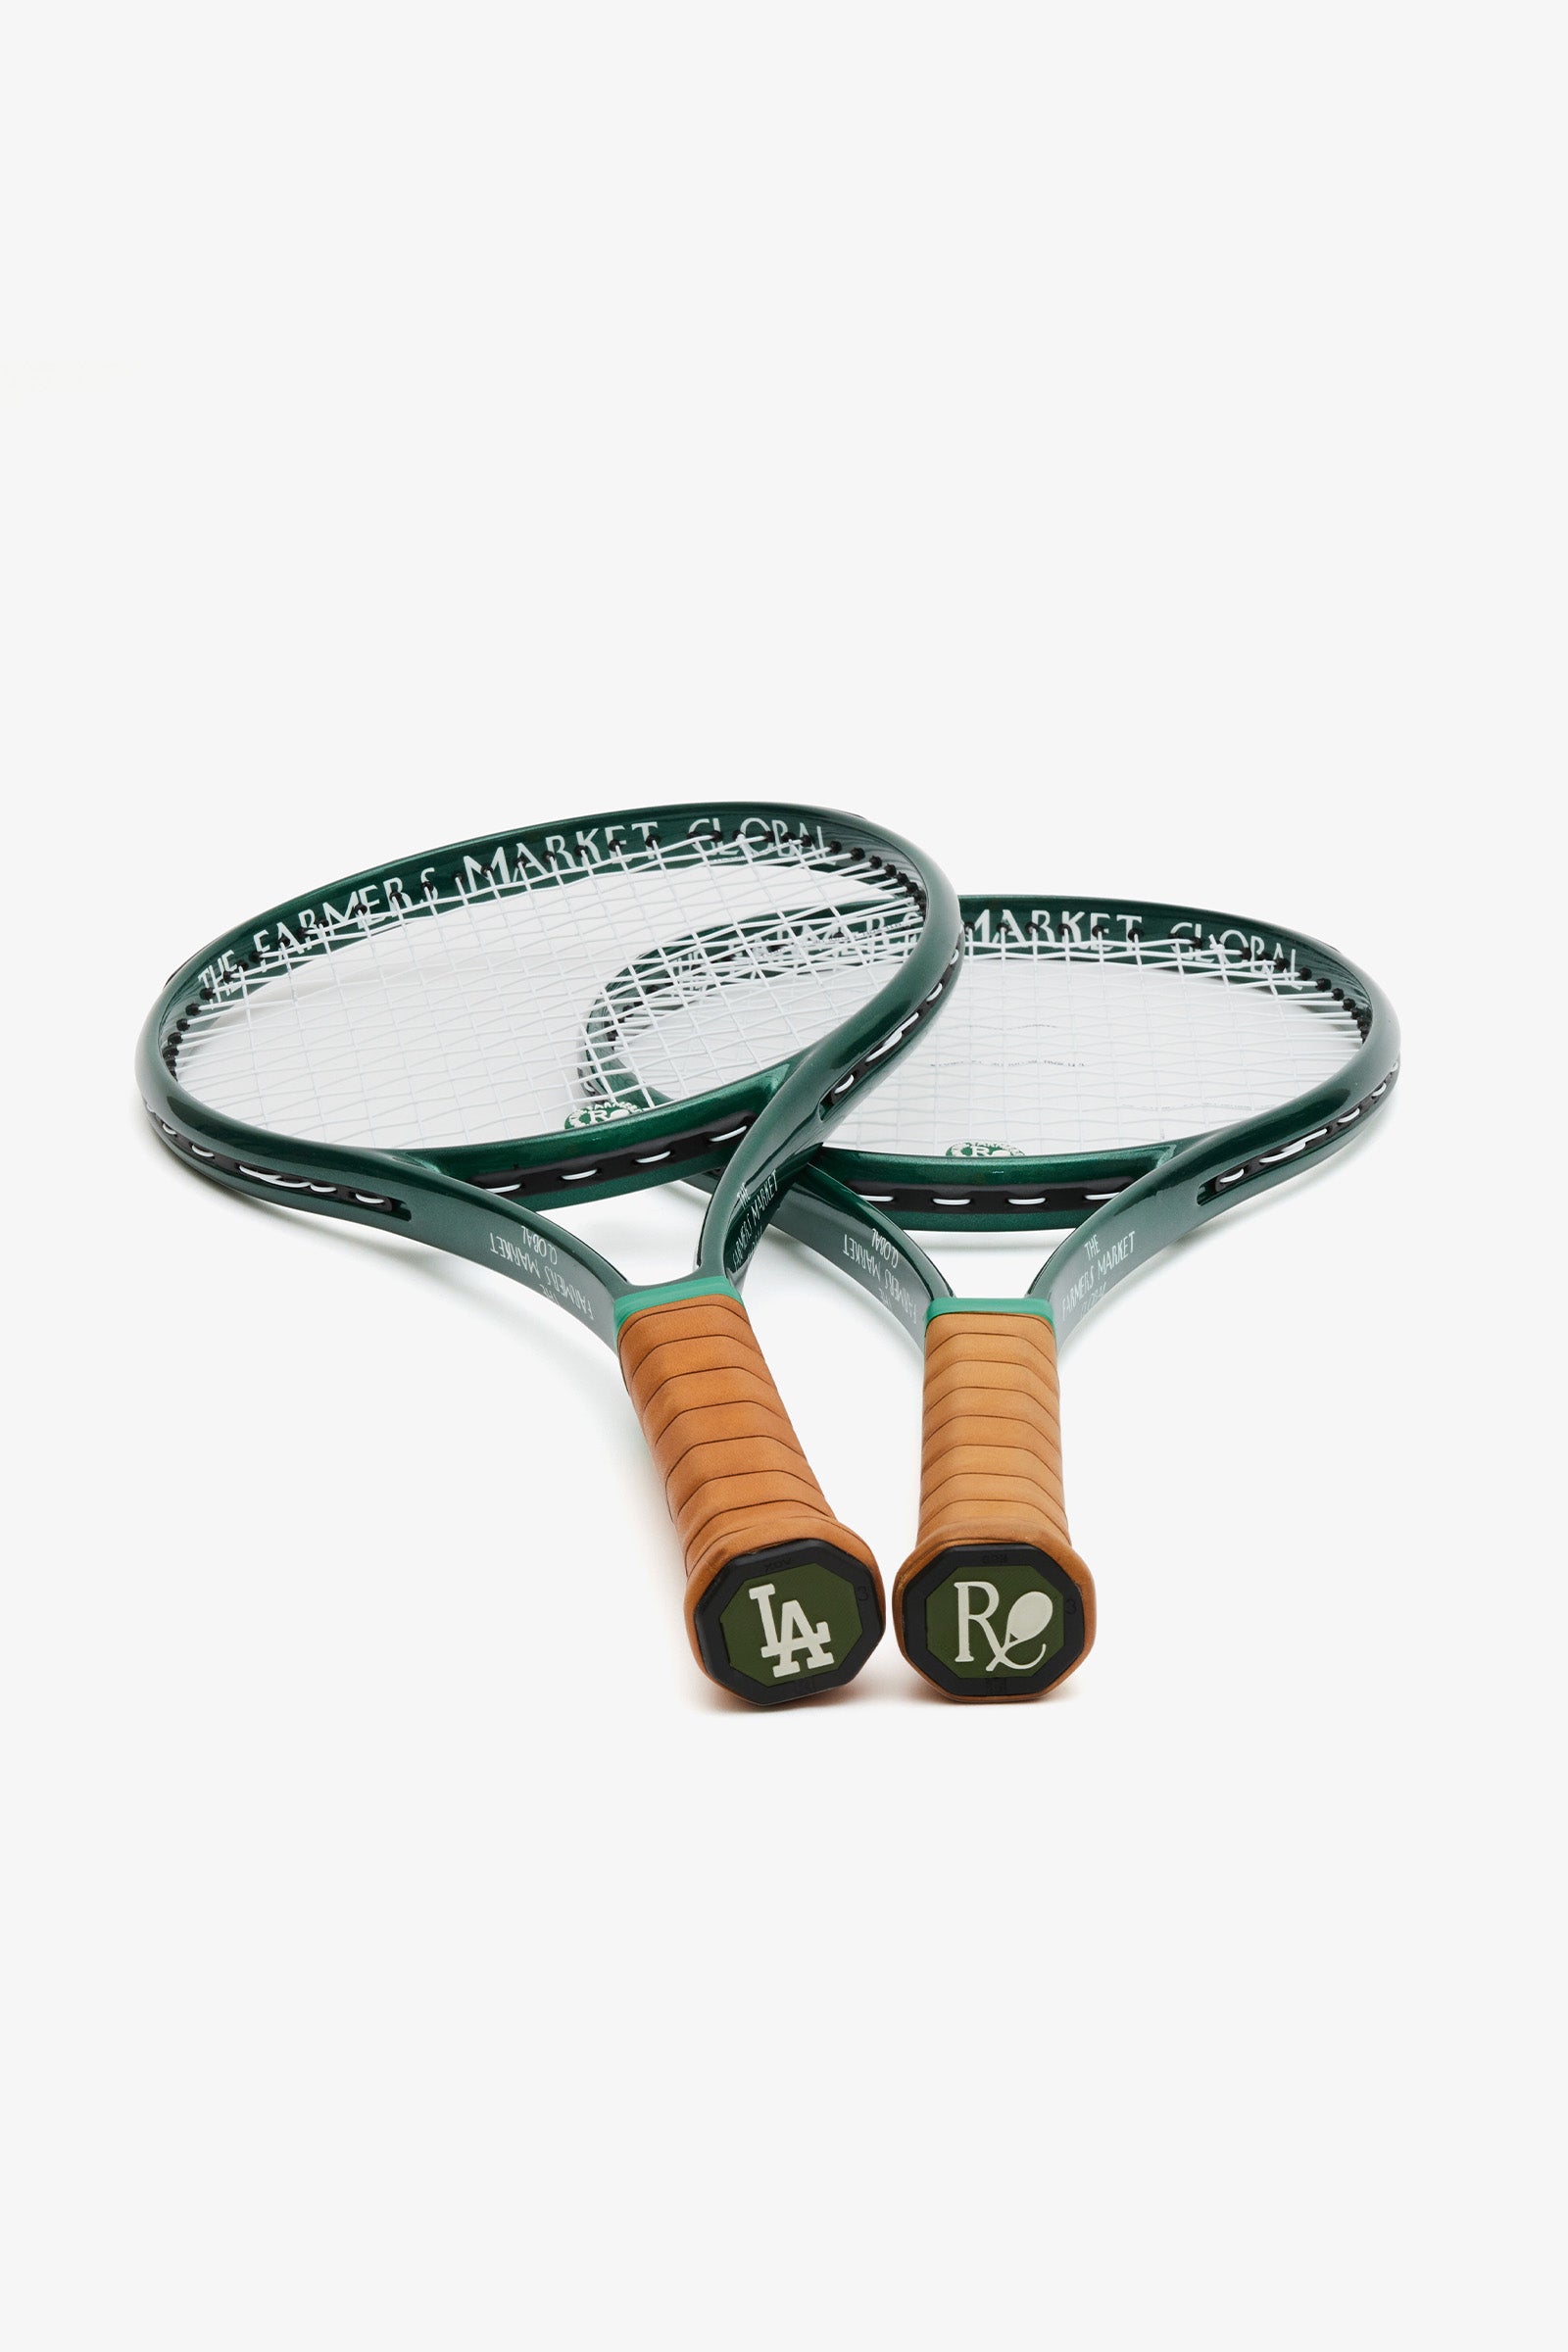 The Farmers Market Global Tennis Racquet